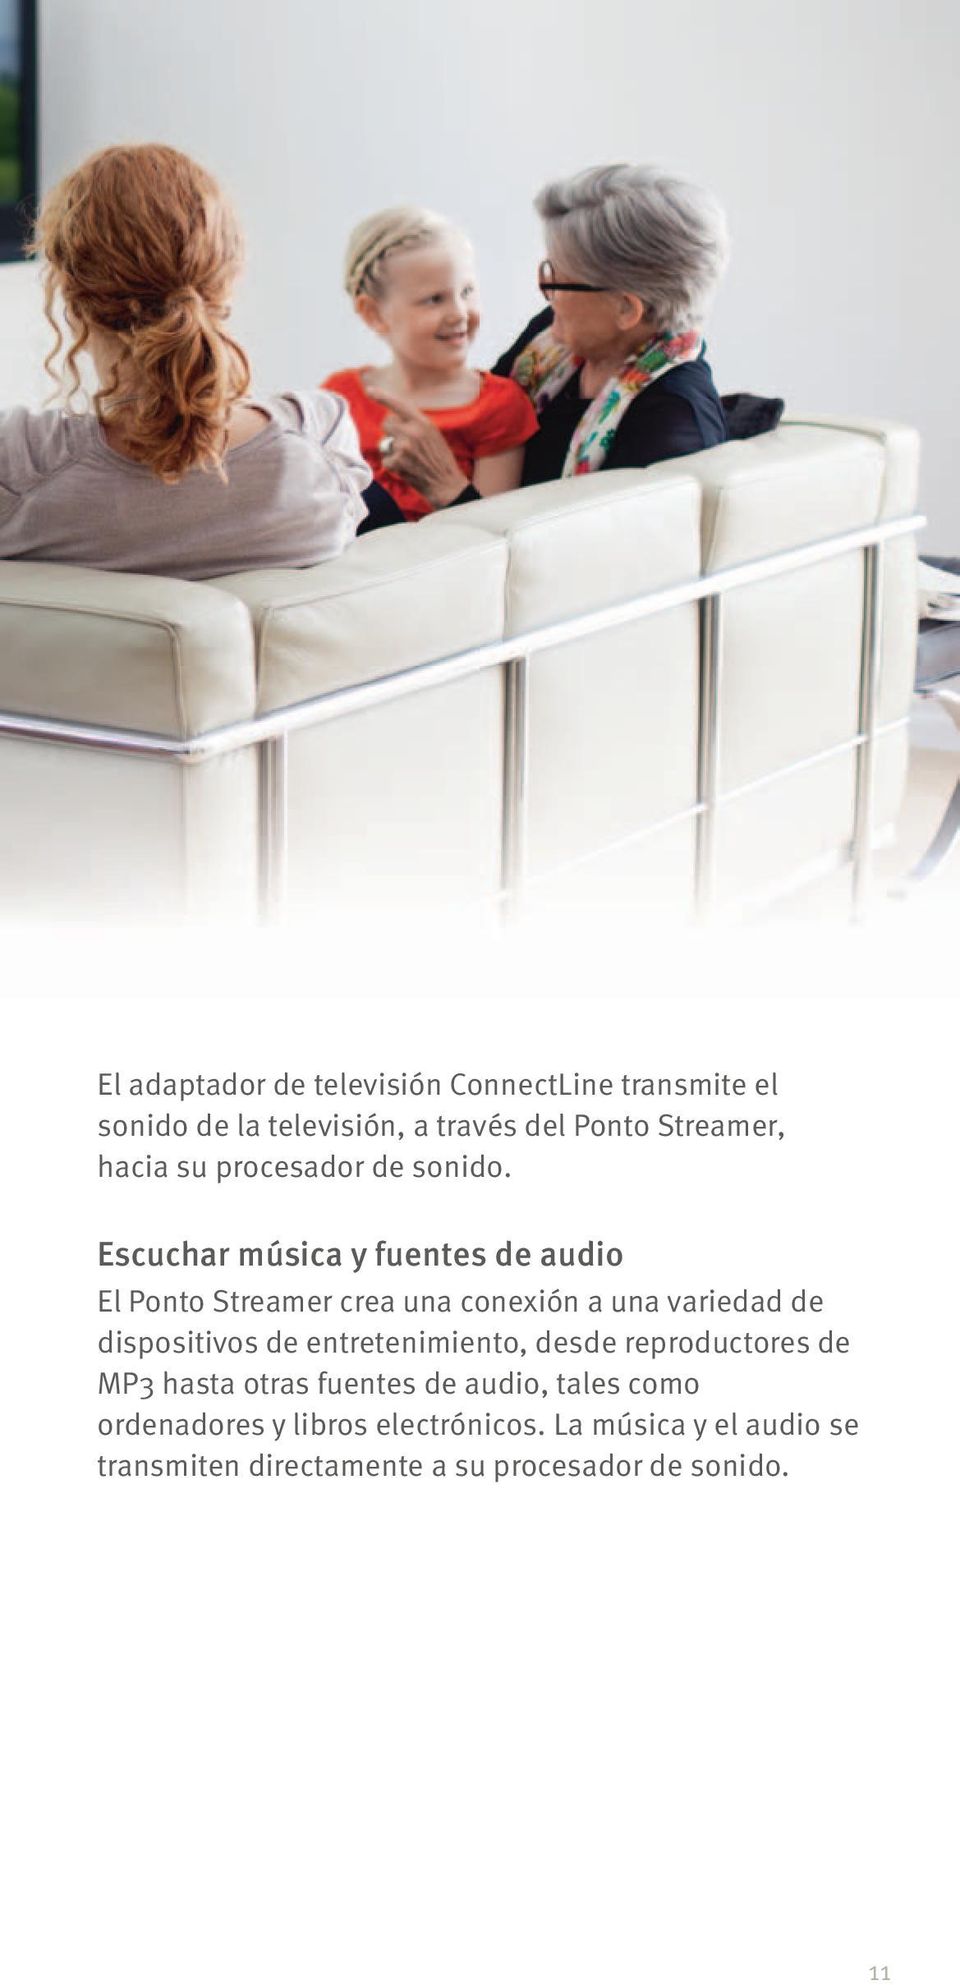 Escuchar música y fuentes de audio El Ponto Streamer crea una conexión a una variedad de dispositivos de